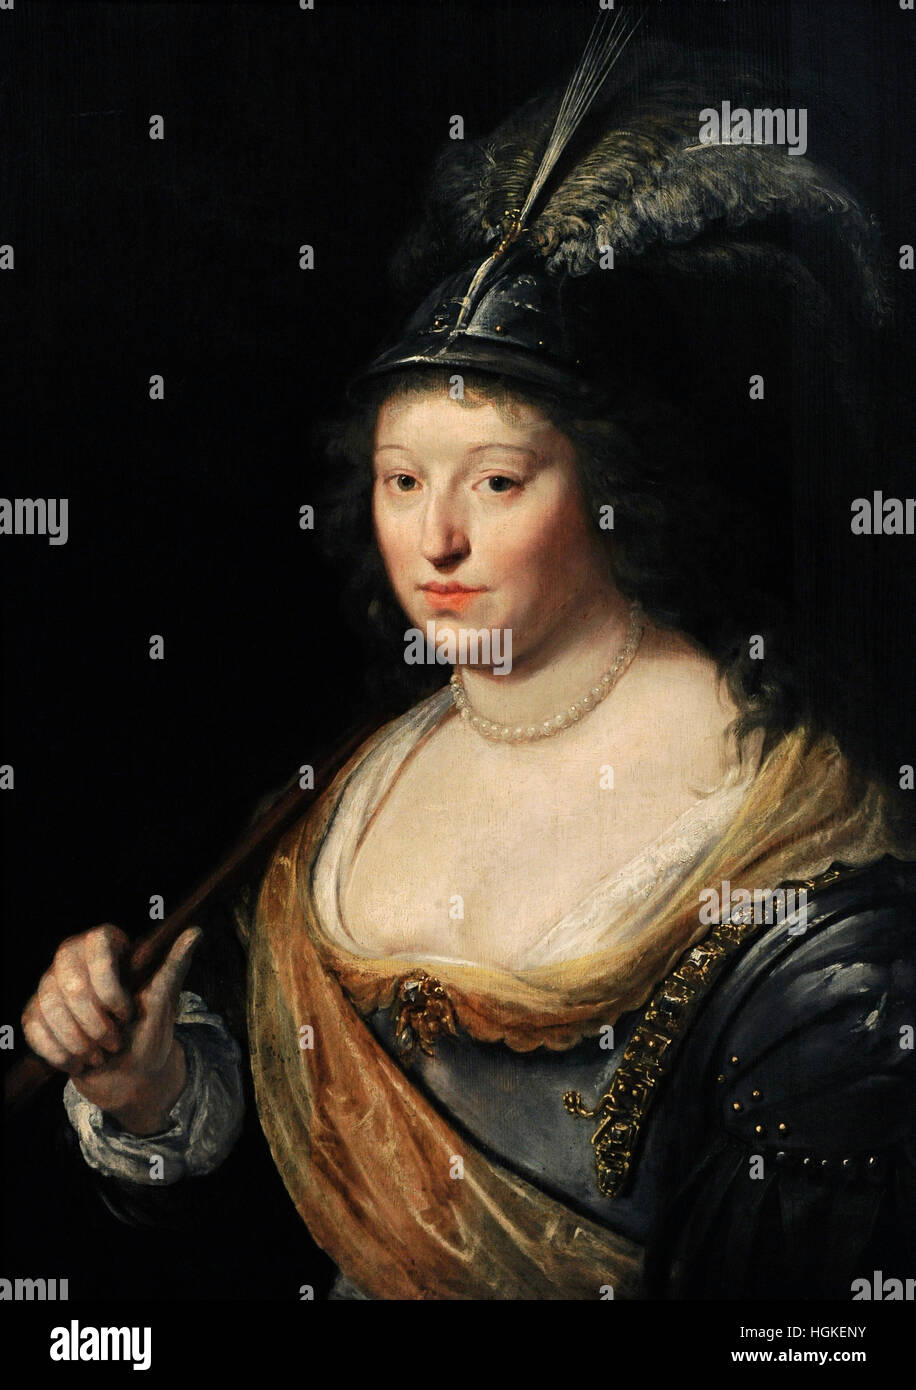 Paulus Moreelse (1571-1638). Niederländischer Maler. Porträt einer Dame als Minerva. Niederlanden, die 1620s. Öl auf Holz. National Museum. Danzig. Polen. Stockfoto